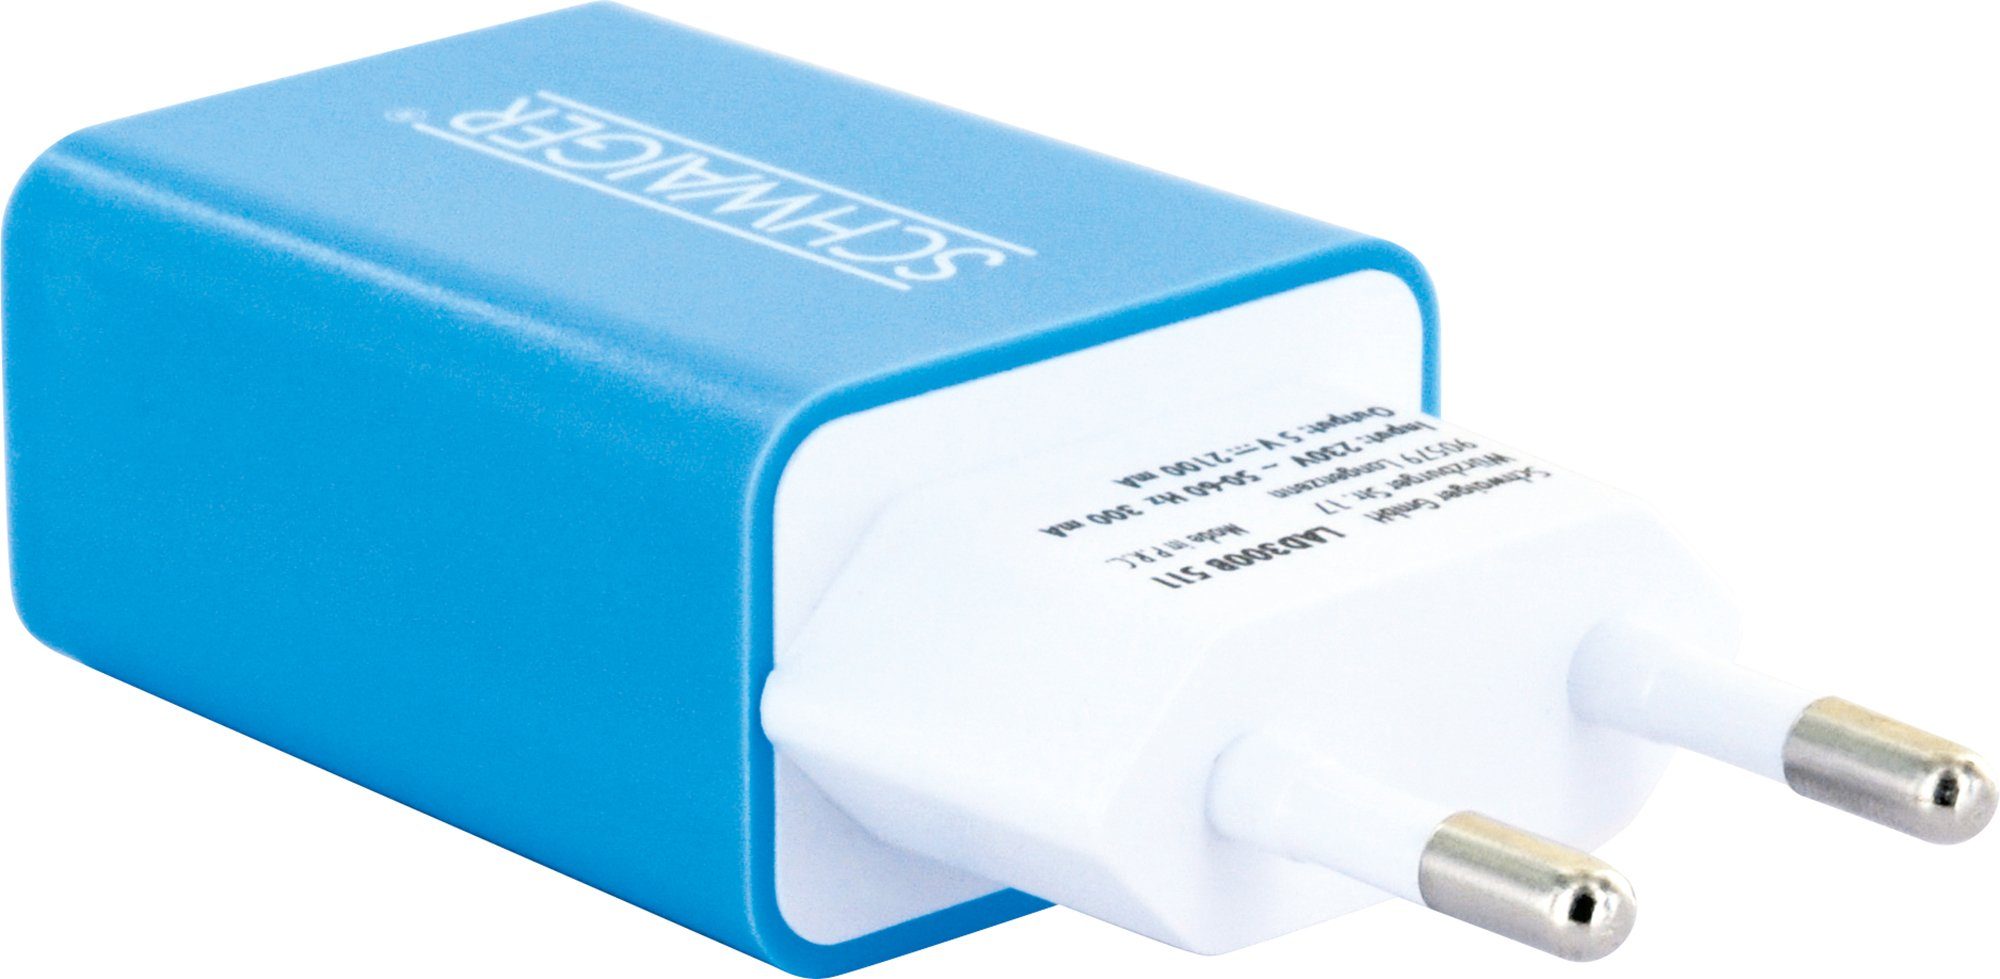 Schwaiger LAD300B 511 KFZ-Adapter Eurostecker zu USB 2.0 A Buchse, integriertes Multi-Schutz Sicherheitssystem blau